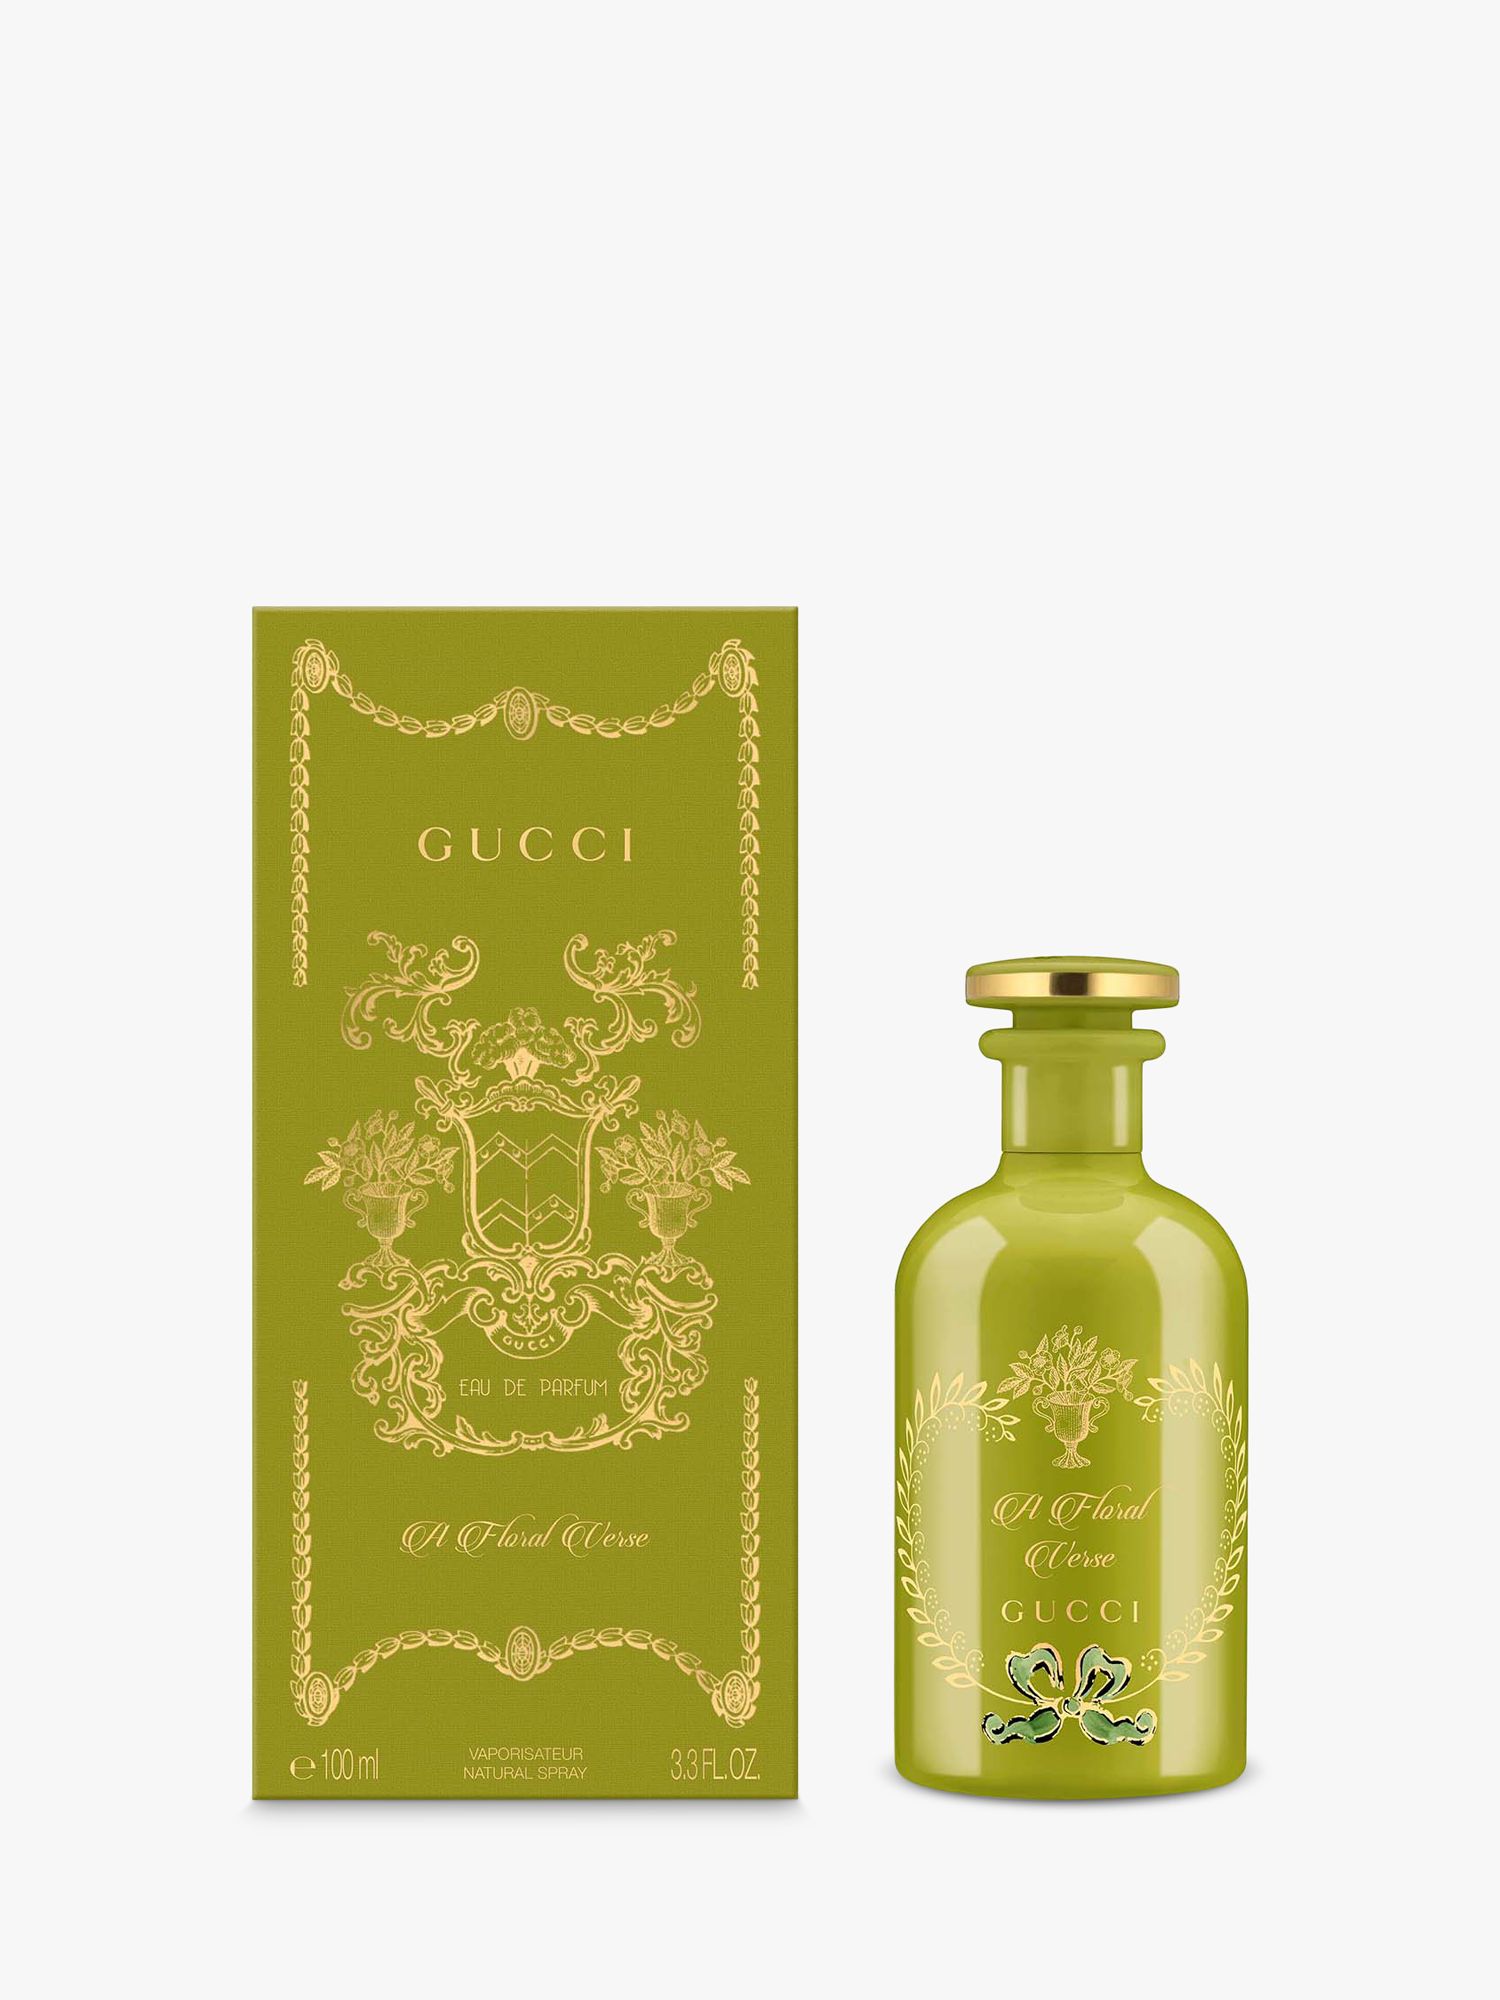 Gucci The Alchemist's Garden A Floral Verse Eau de Parfum, 100ml 2